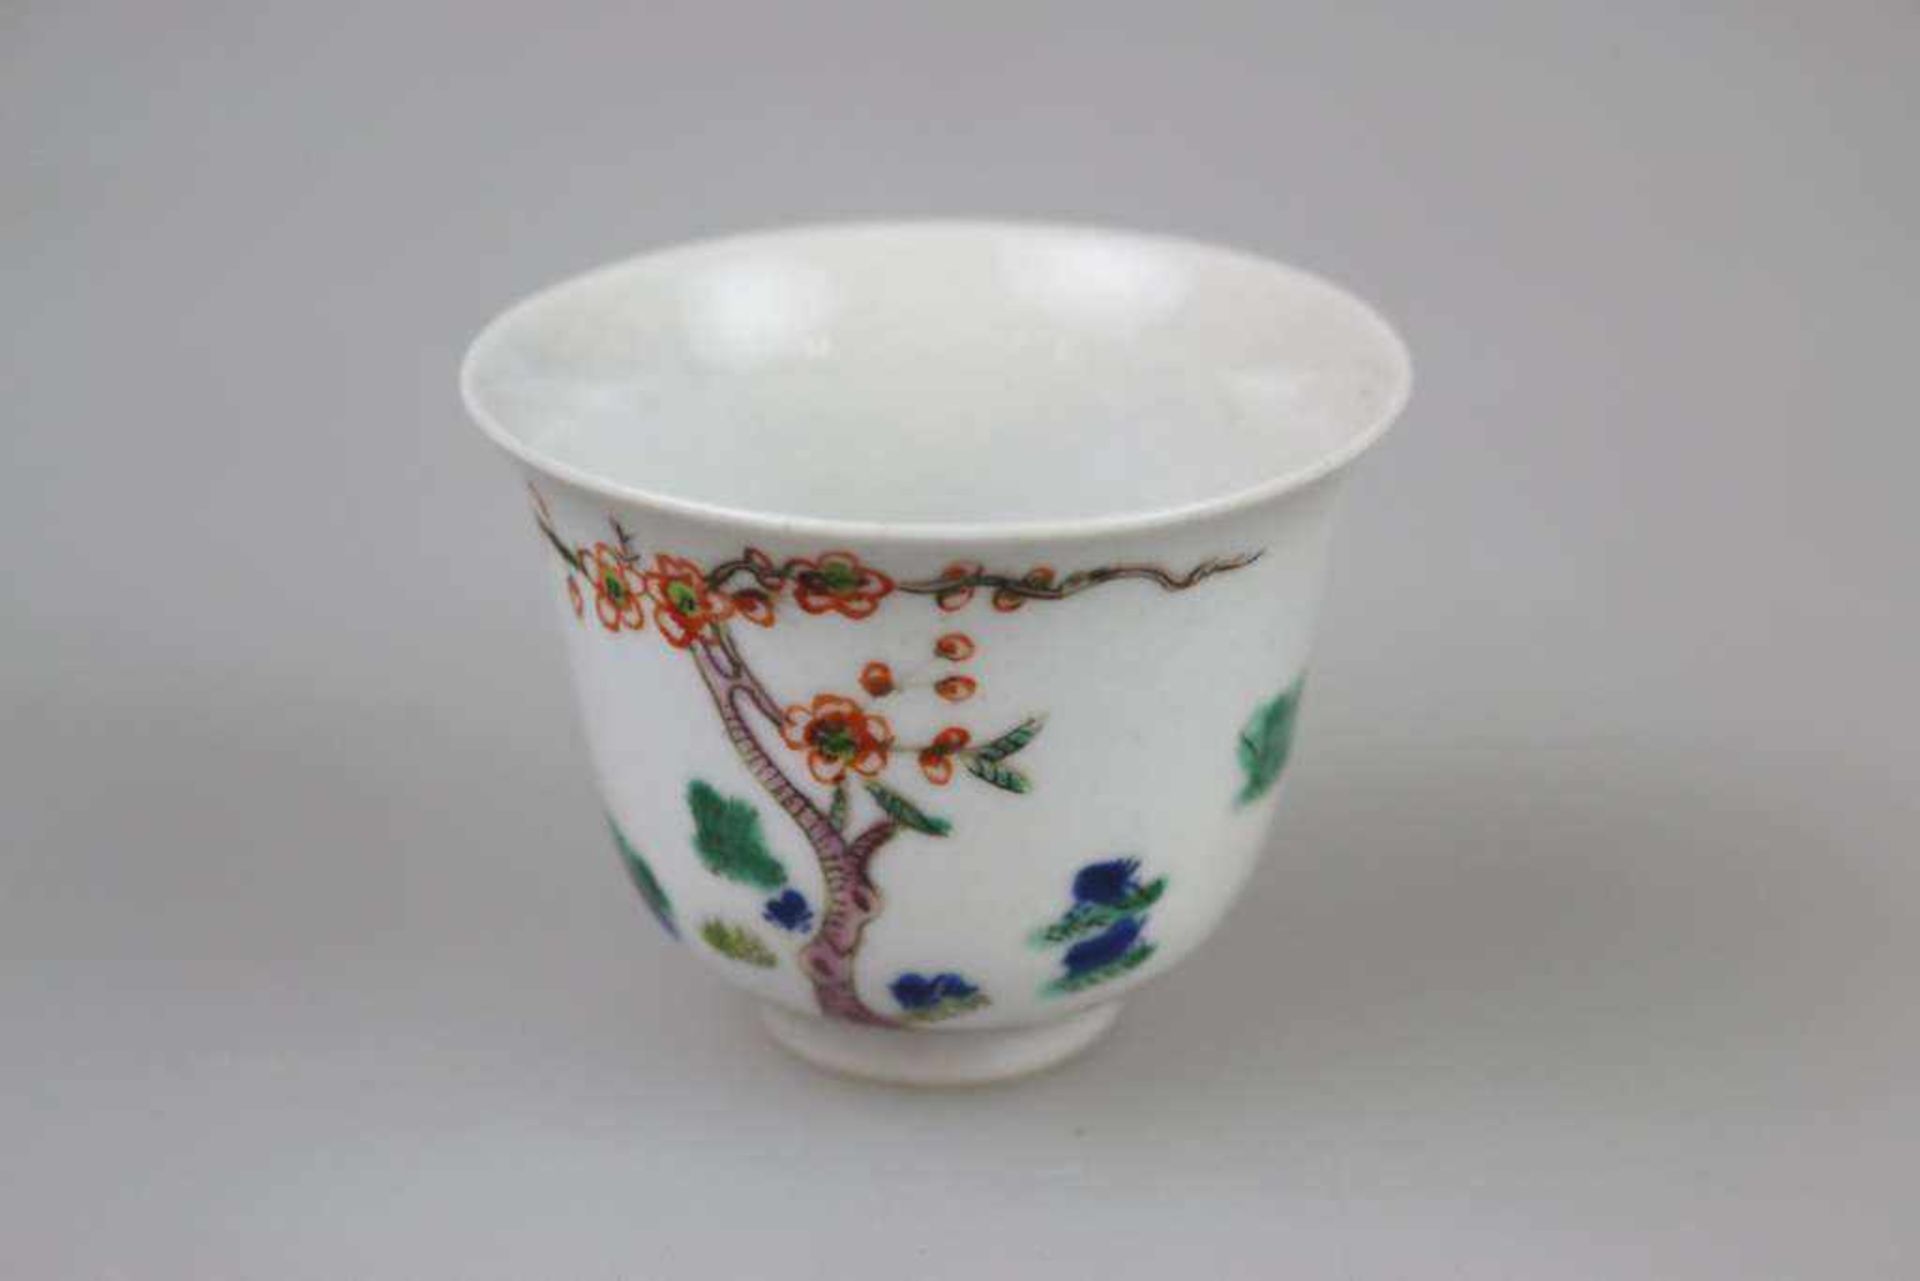 Teeschälchen, Porzellan, China um 1900, mit Pfirsichblütendekor und Gedichtzeilen, am Stand